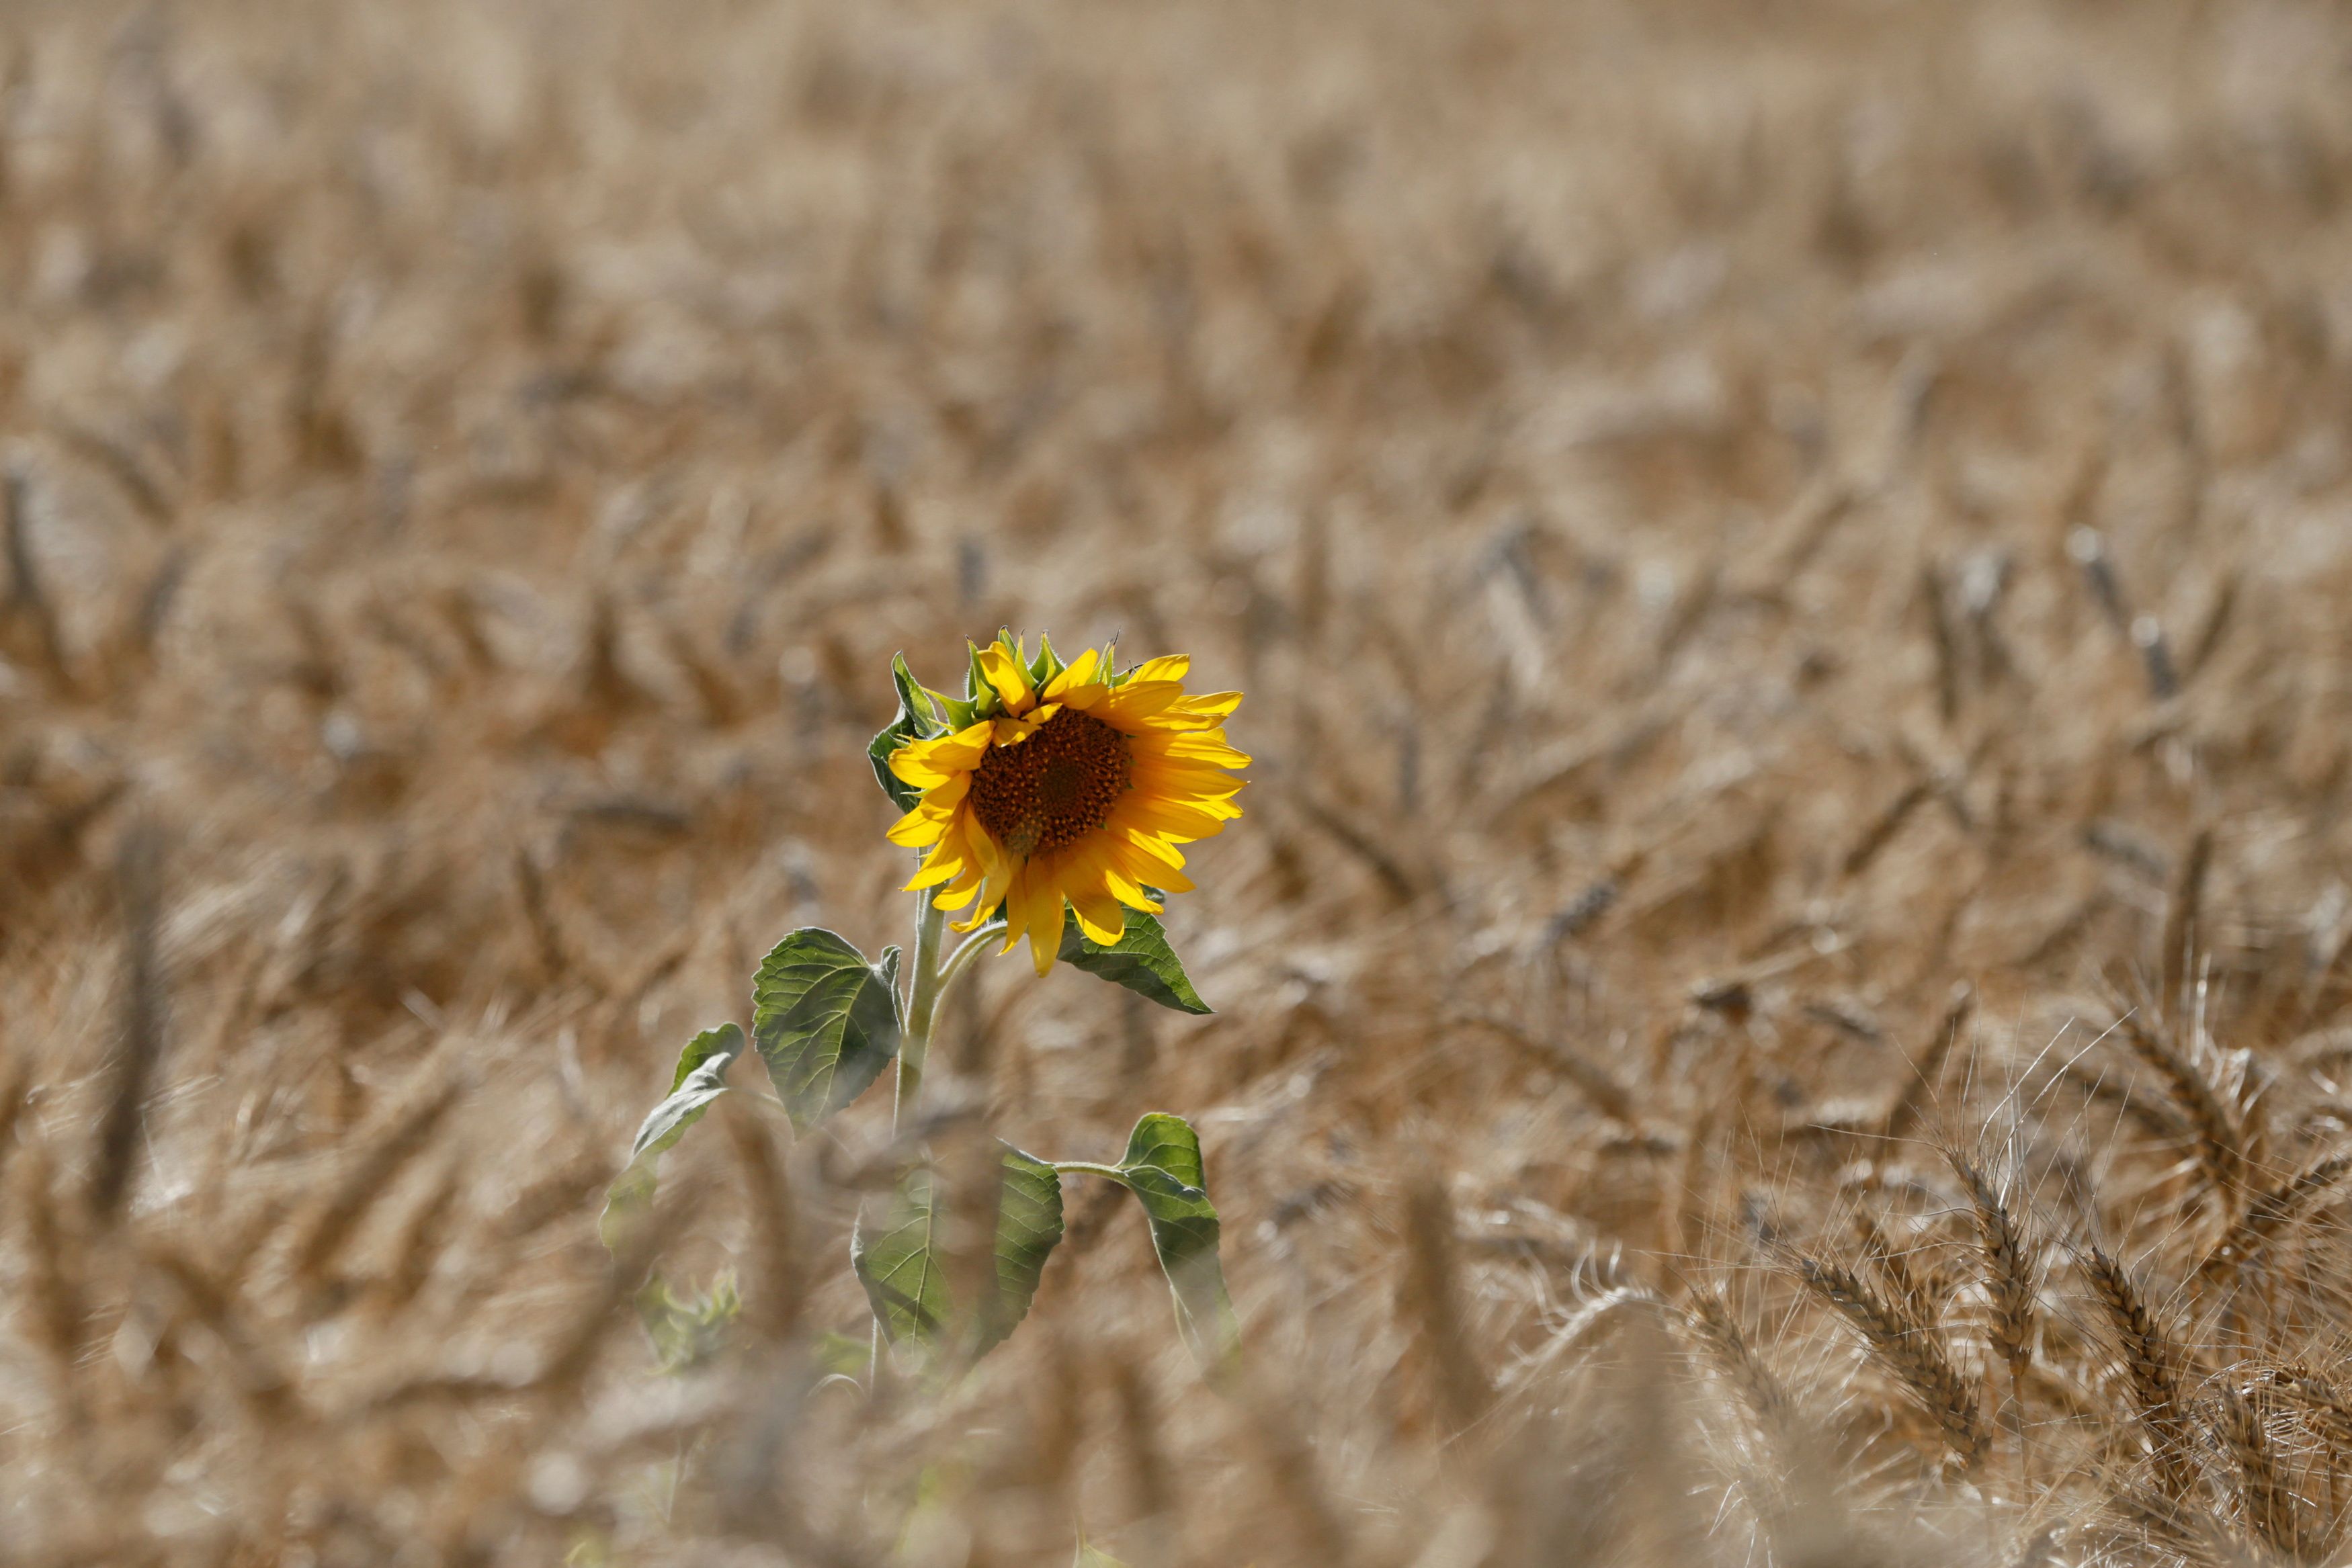 FILE PHOTO: Sunflower is seen on wheat field in Kiev region